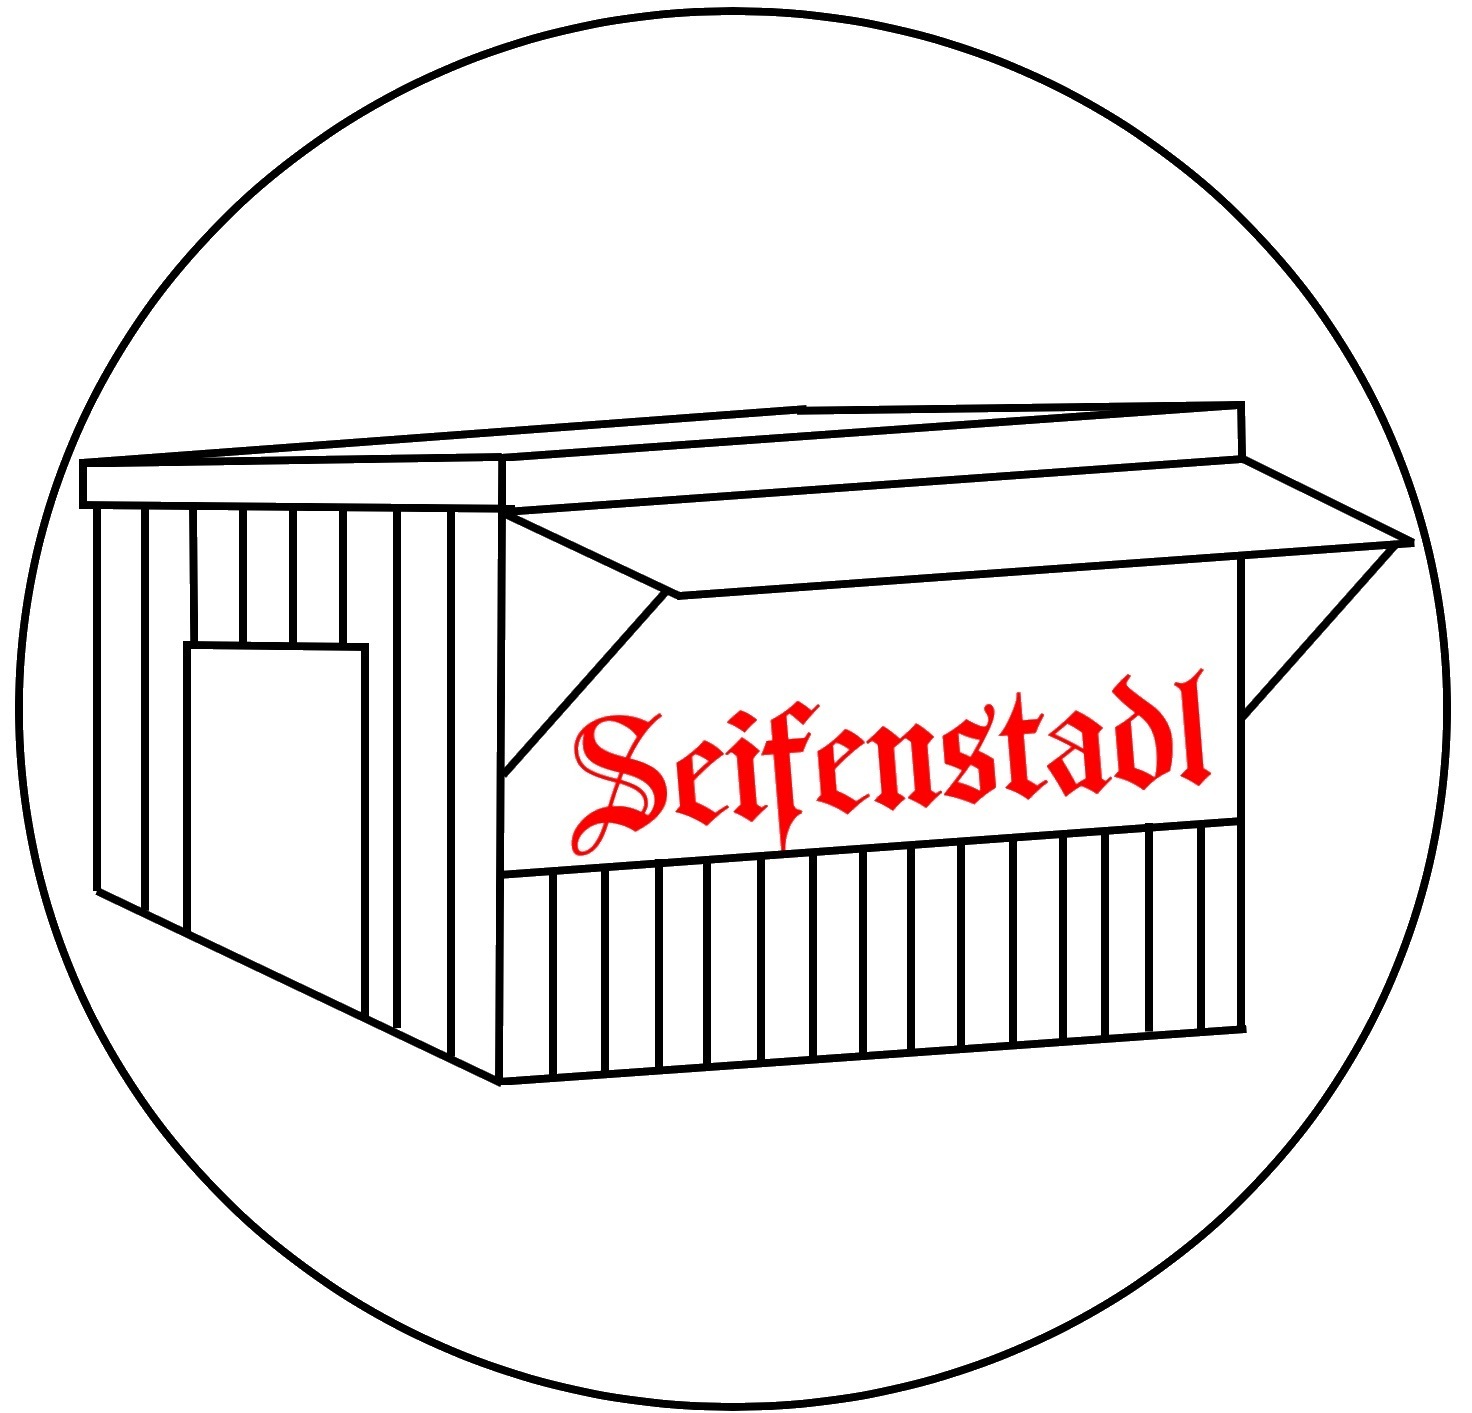 Seifenstadl -Ihr Seifenshop aus Augsburg